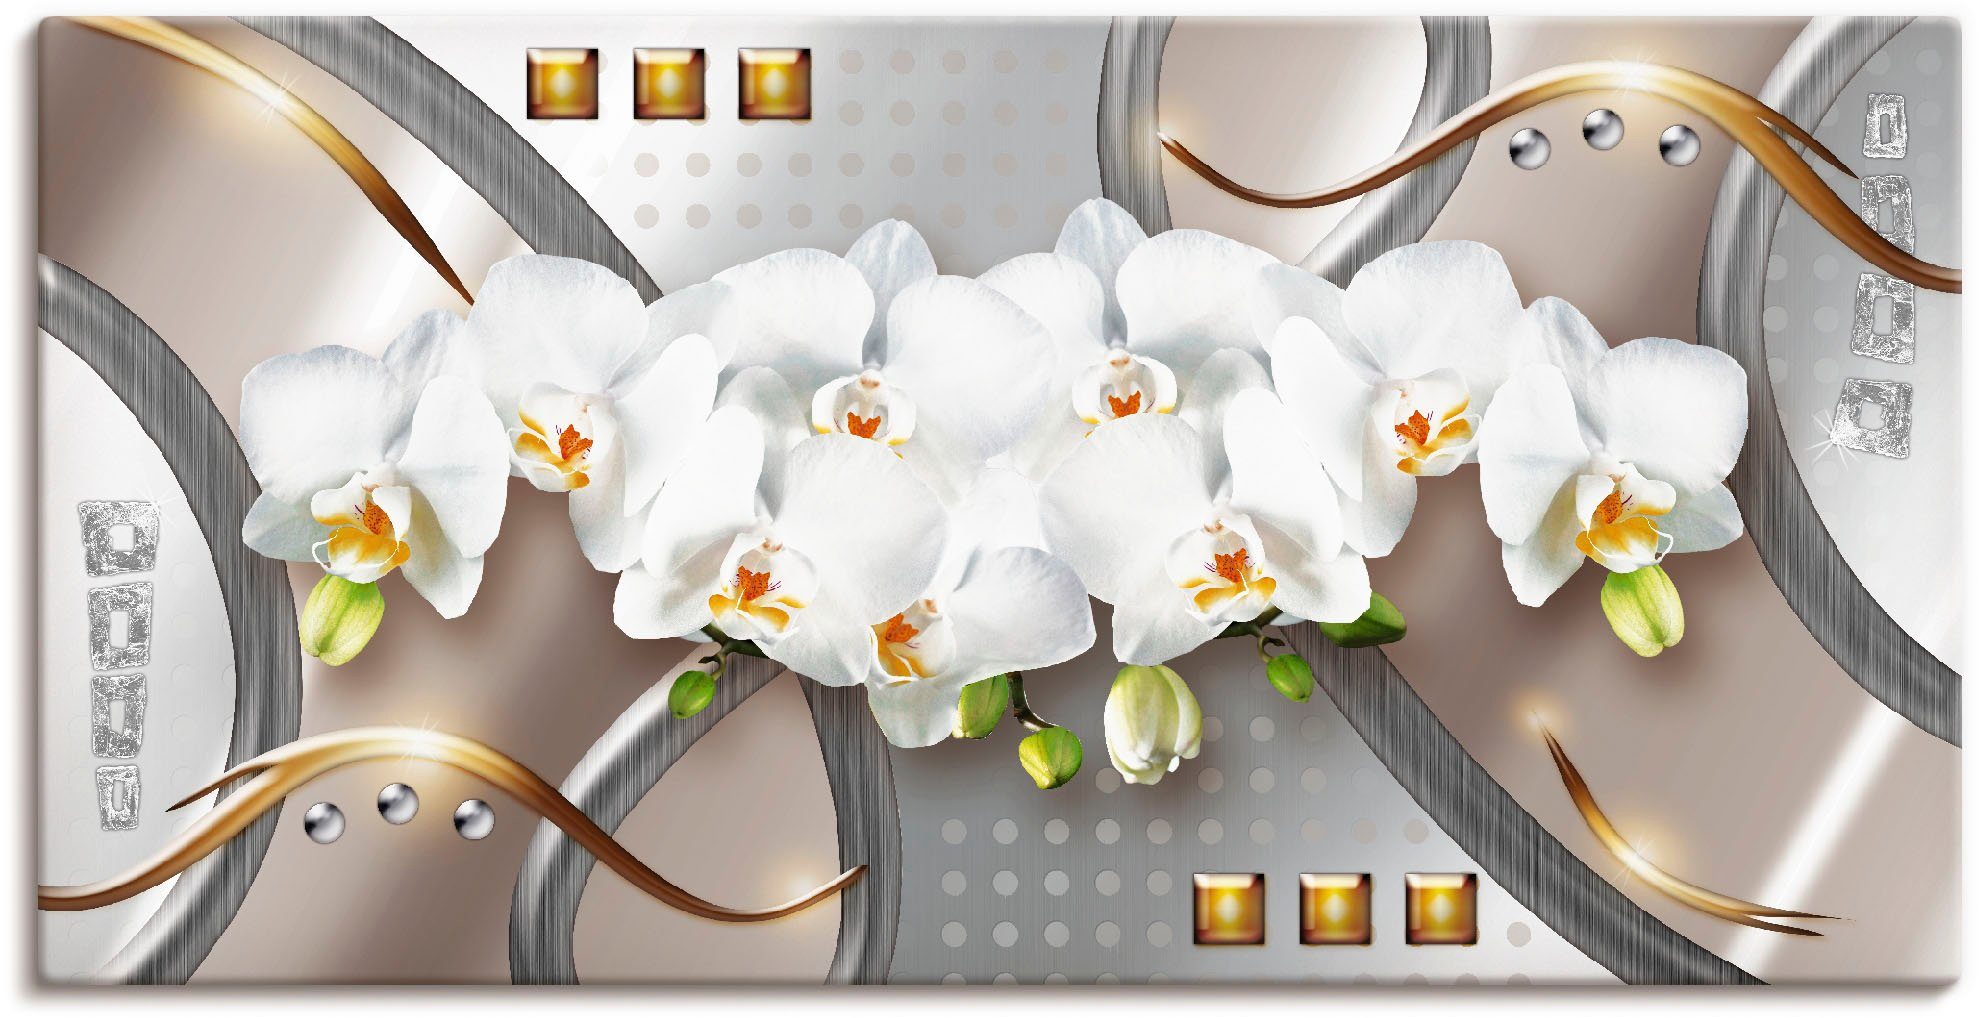 Artland Artprint Orchideeën met elementen in vele afmetingen & productsoorten -artprint op linnen, poster, muursticker / wandfolie ook geschikt voor de badkamer (1 stuk)